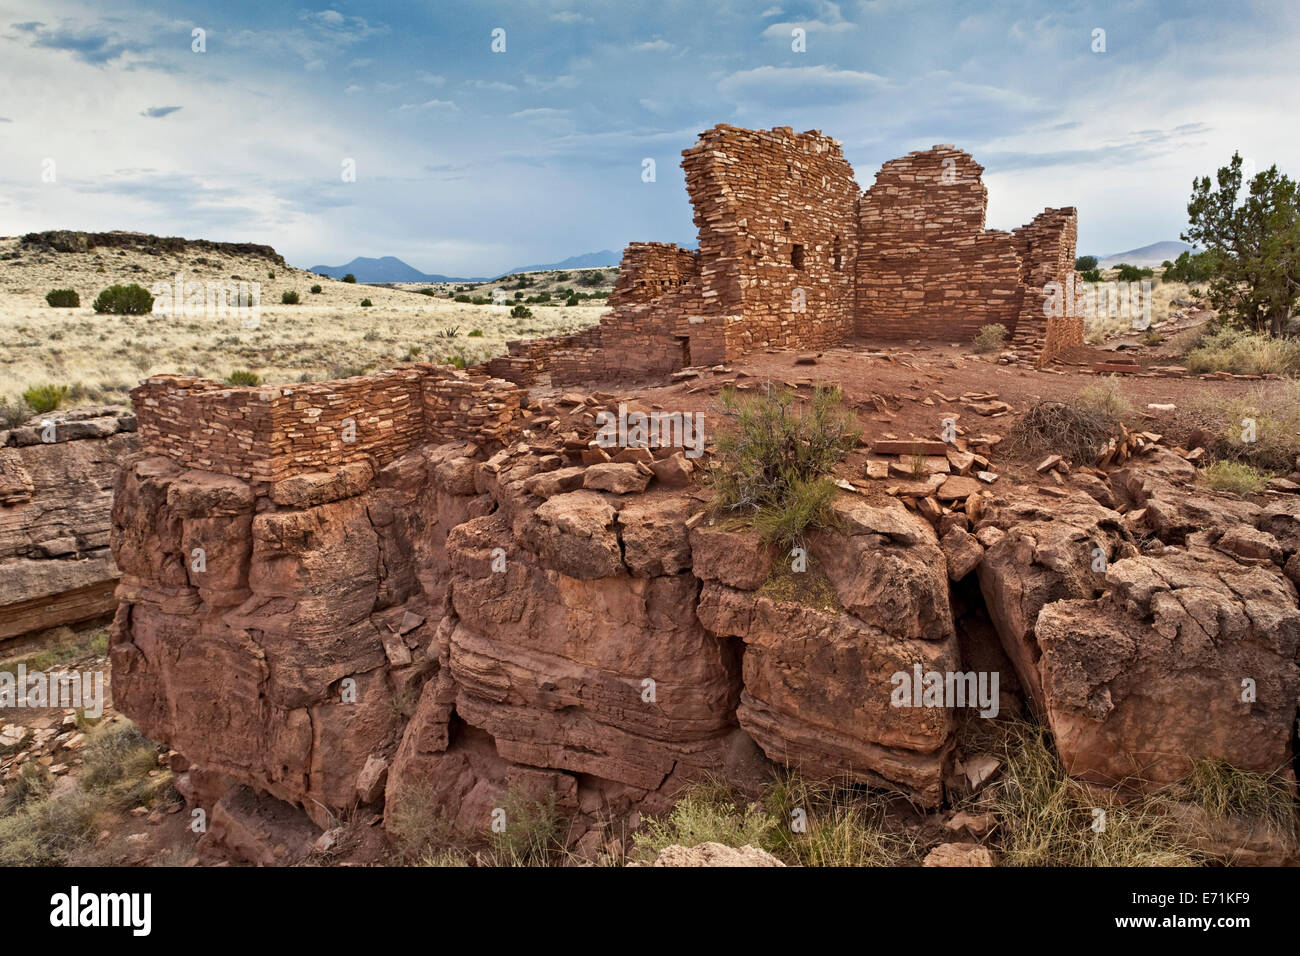 Cañón ruinas - El Monumento Nacional Wupatki es un monumento nacional situado en la parte norte-central de Arizona, cerca de Flagstaff. Foto de stock